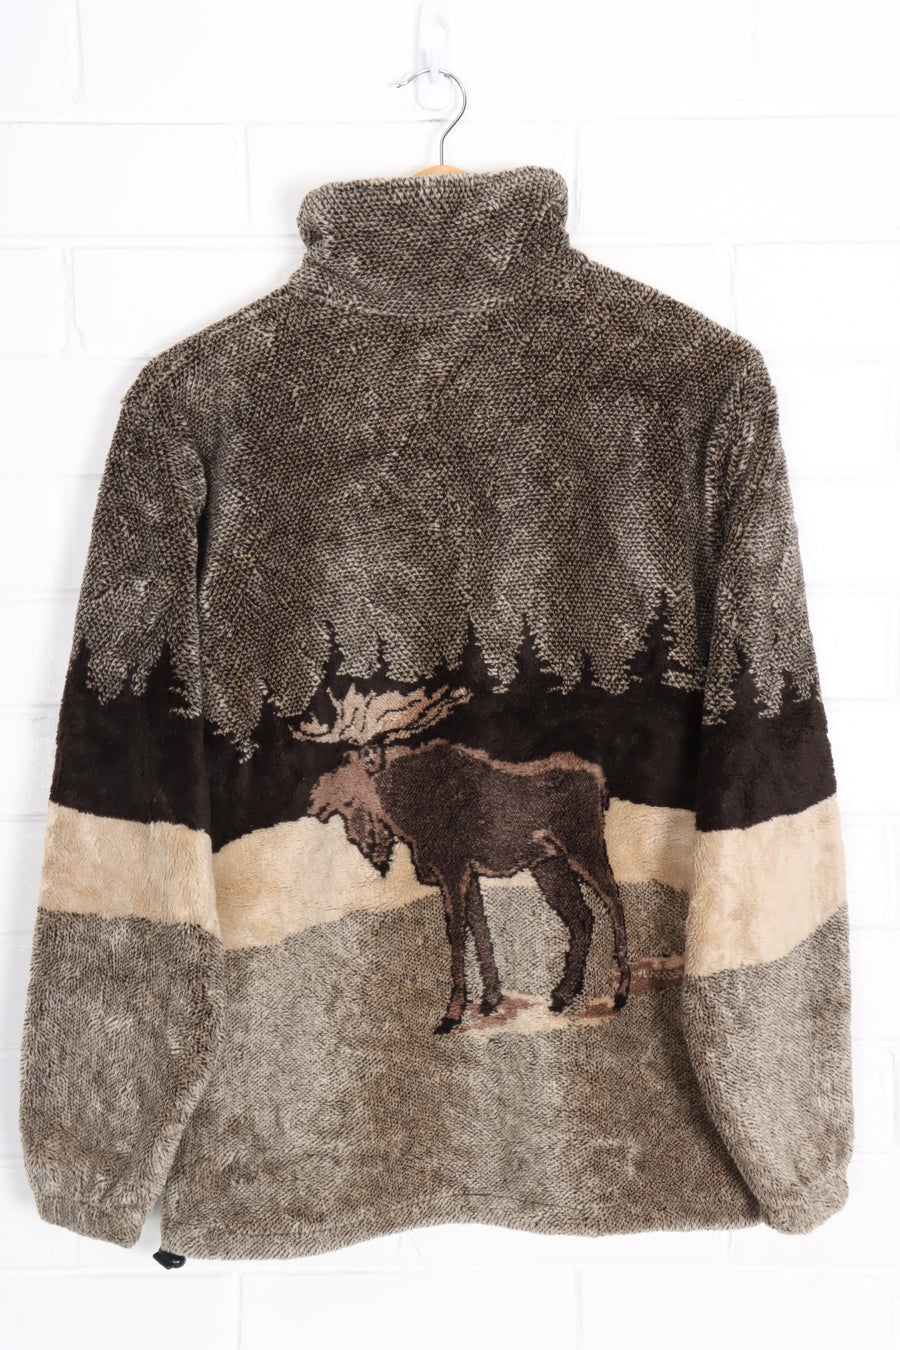 Moose & Nature Brown Tone Zip Up USA Made Fleece (M)